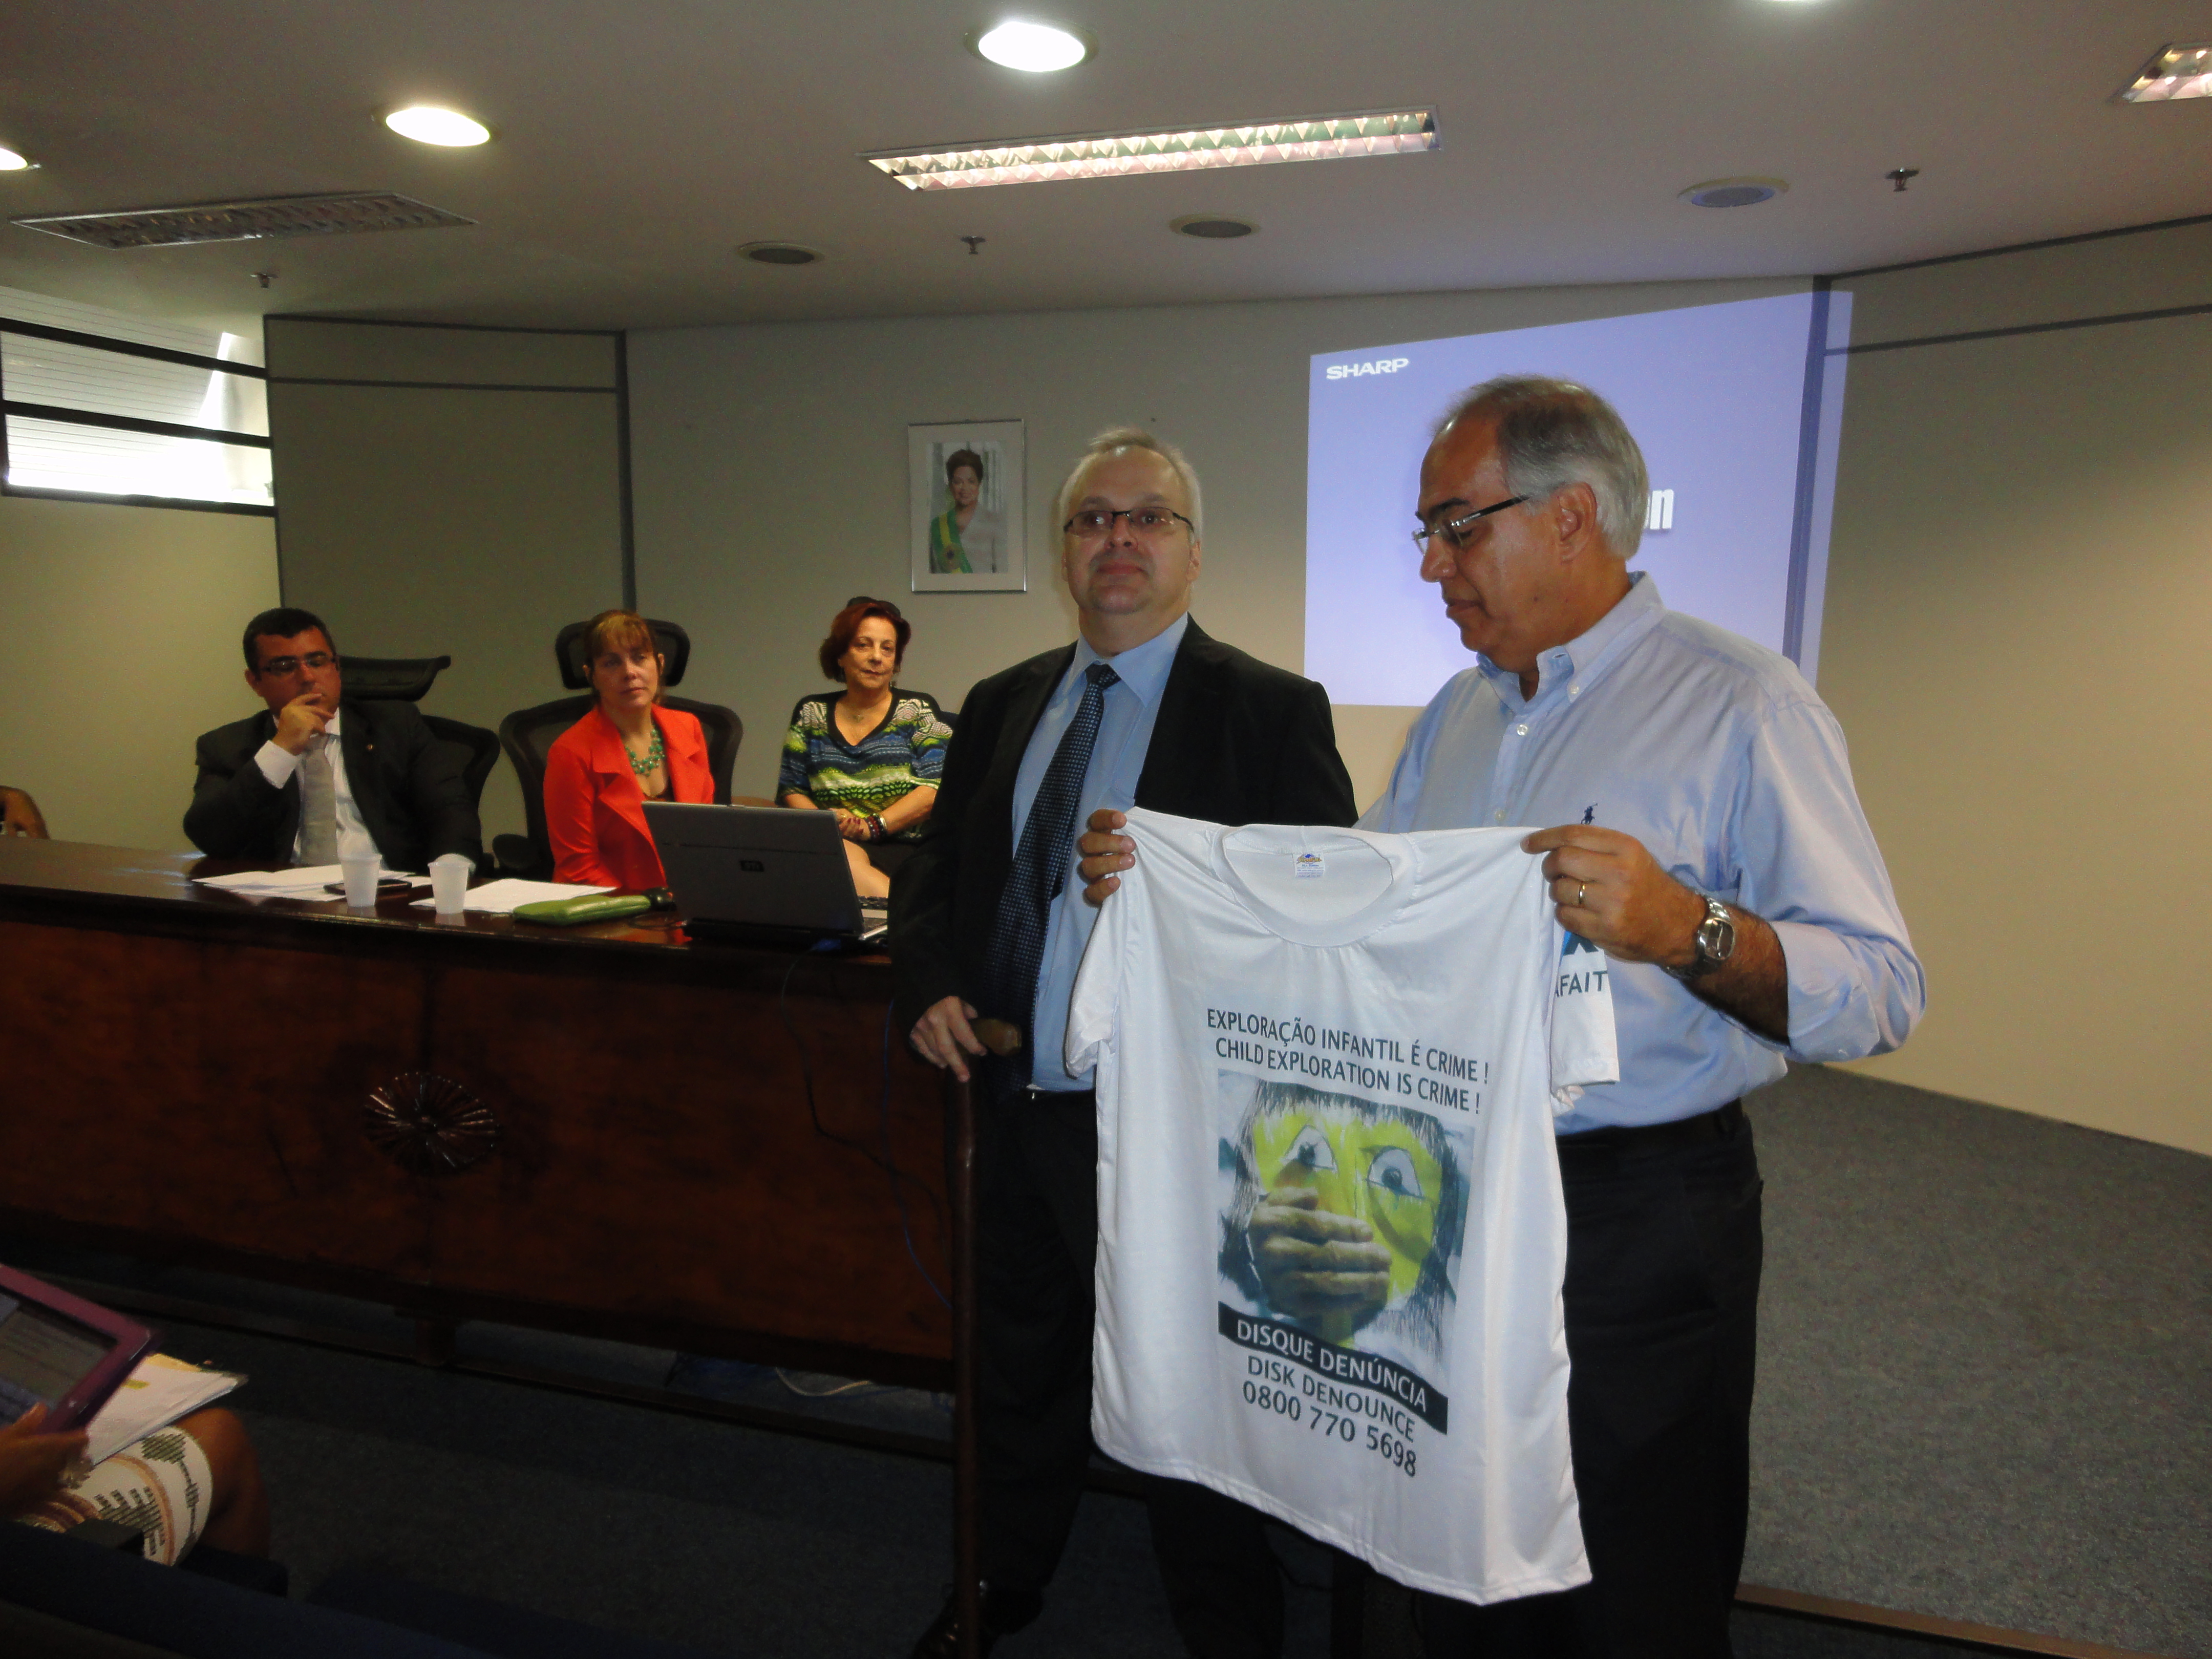 Superintendente Antonio Albuquerque recebe a camisa da campanha promovida pela AFAITERJ contra a exploração infantil